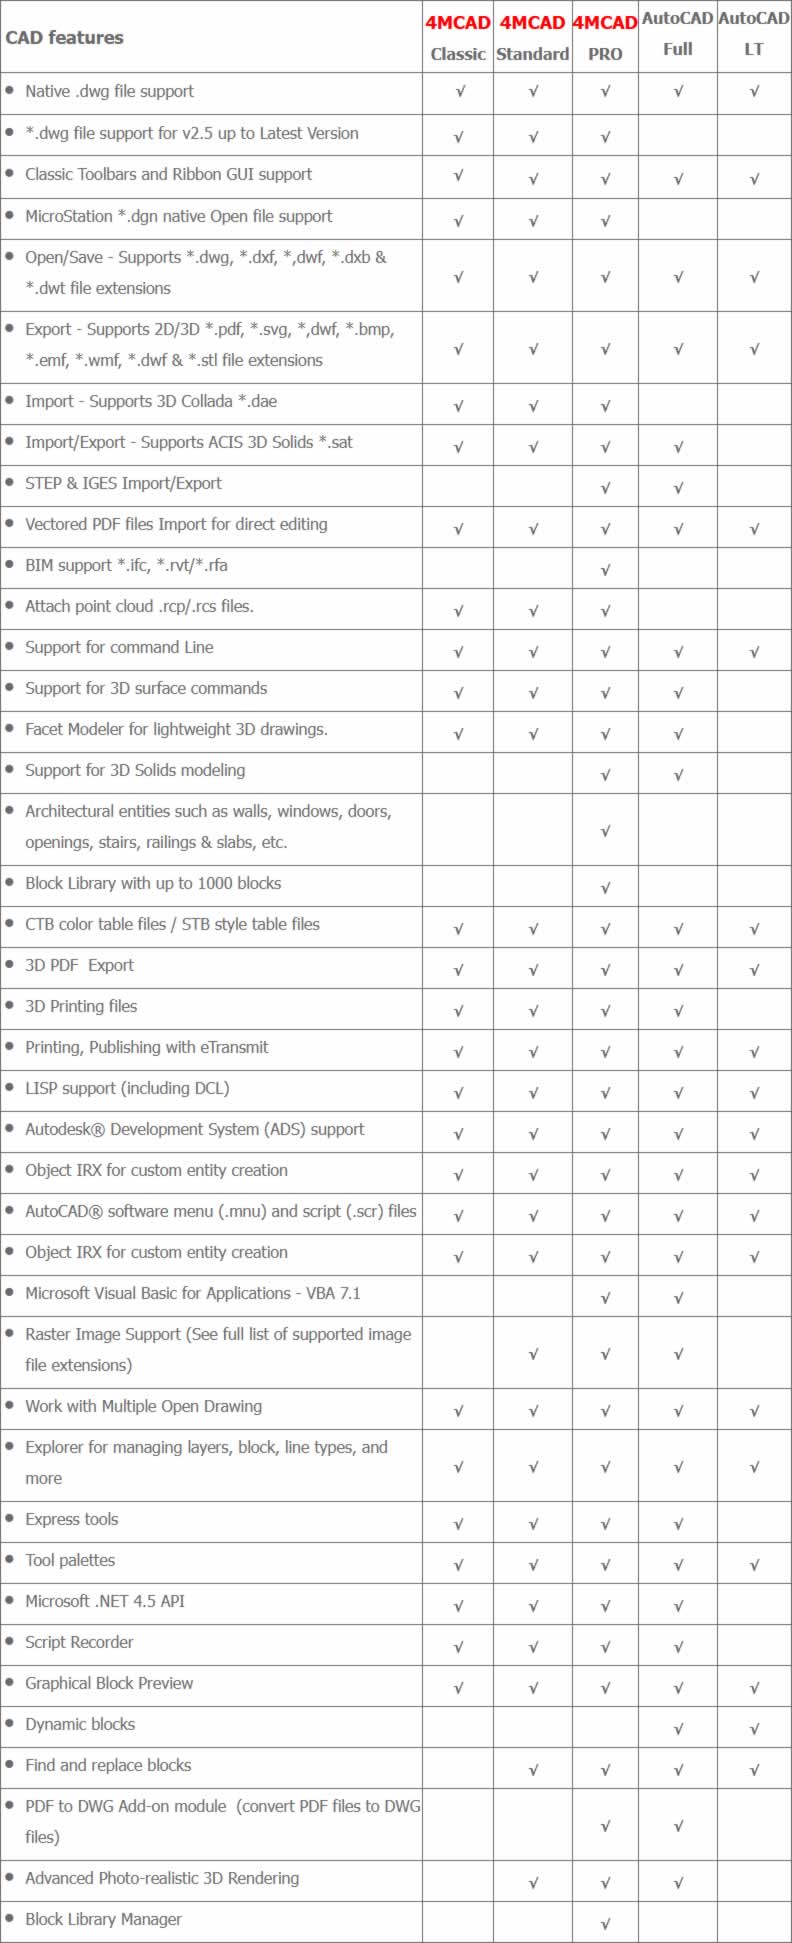 Vergleich 4MCAD alle Ausbaustufen mit AutoCAD und AutoCAD LT